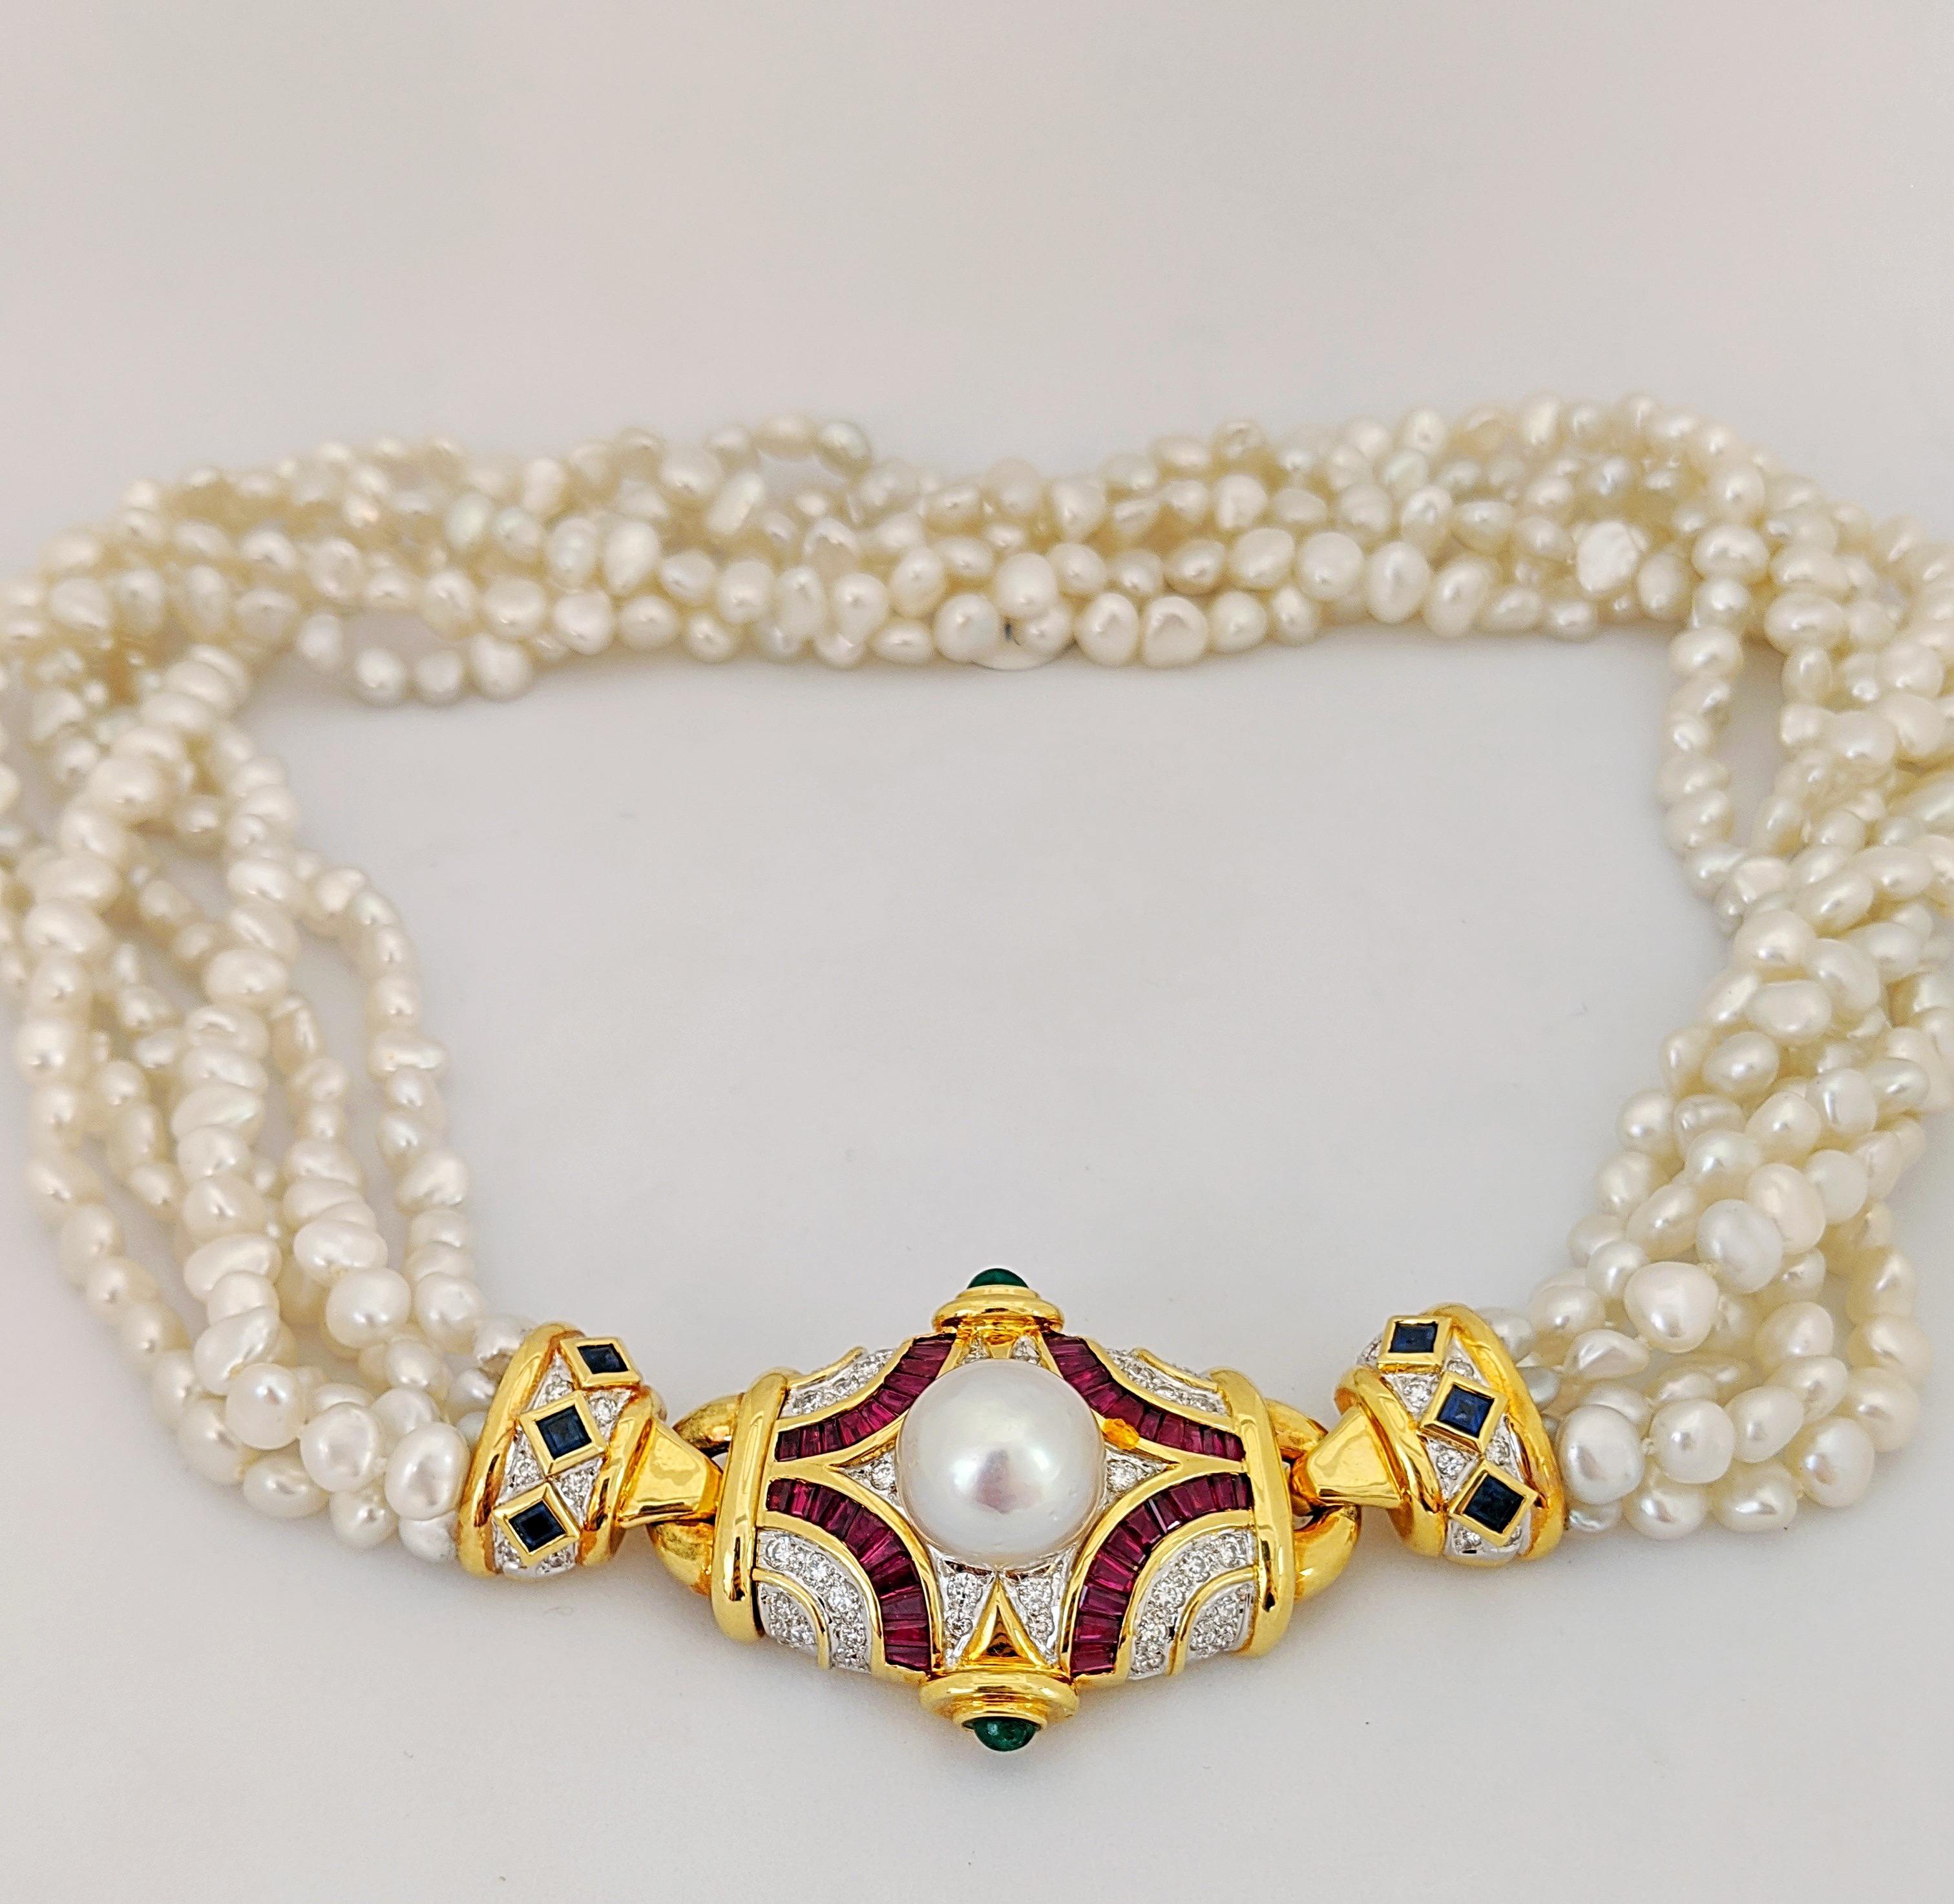 Diese exquisite Halskette mit einem Verschluss aus 18 Karat Gelbgold ist mit runden Diamanten im Brillantschliff und Rubinen im Baguetteschliff besetzt. Das Stück ist außerdem mit Cabachon-Smaragden und einer 12,5 mm großen Südseeperle verziert. Die